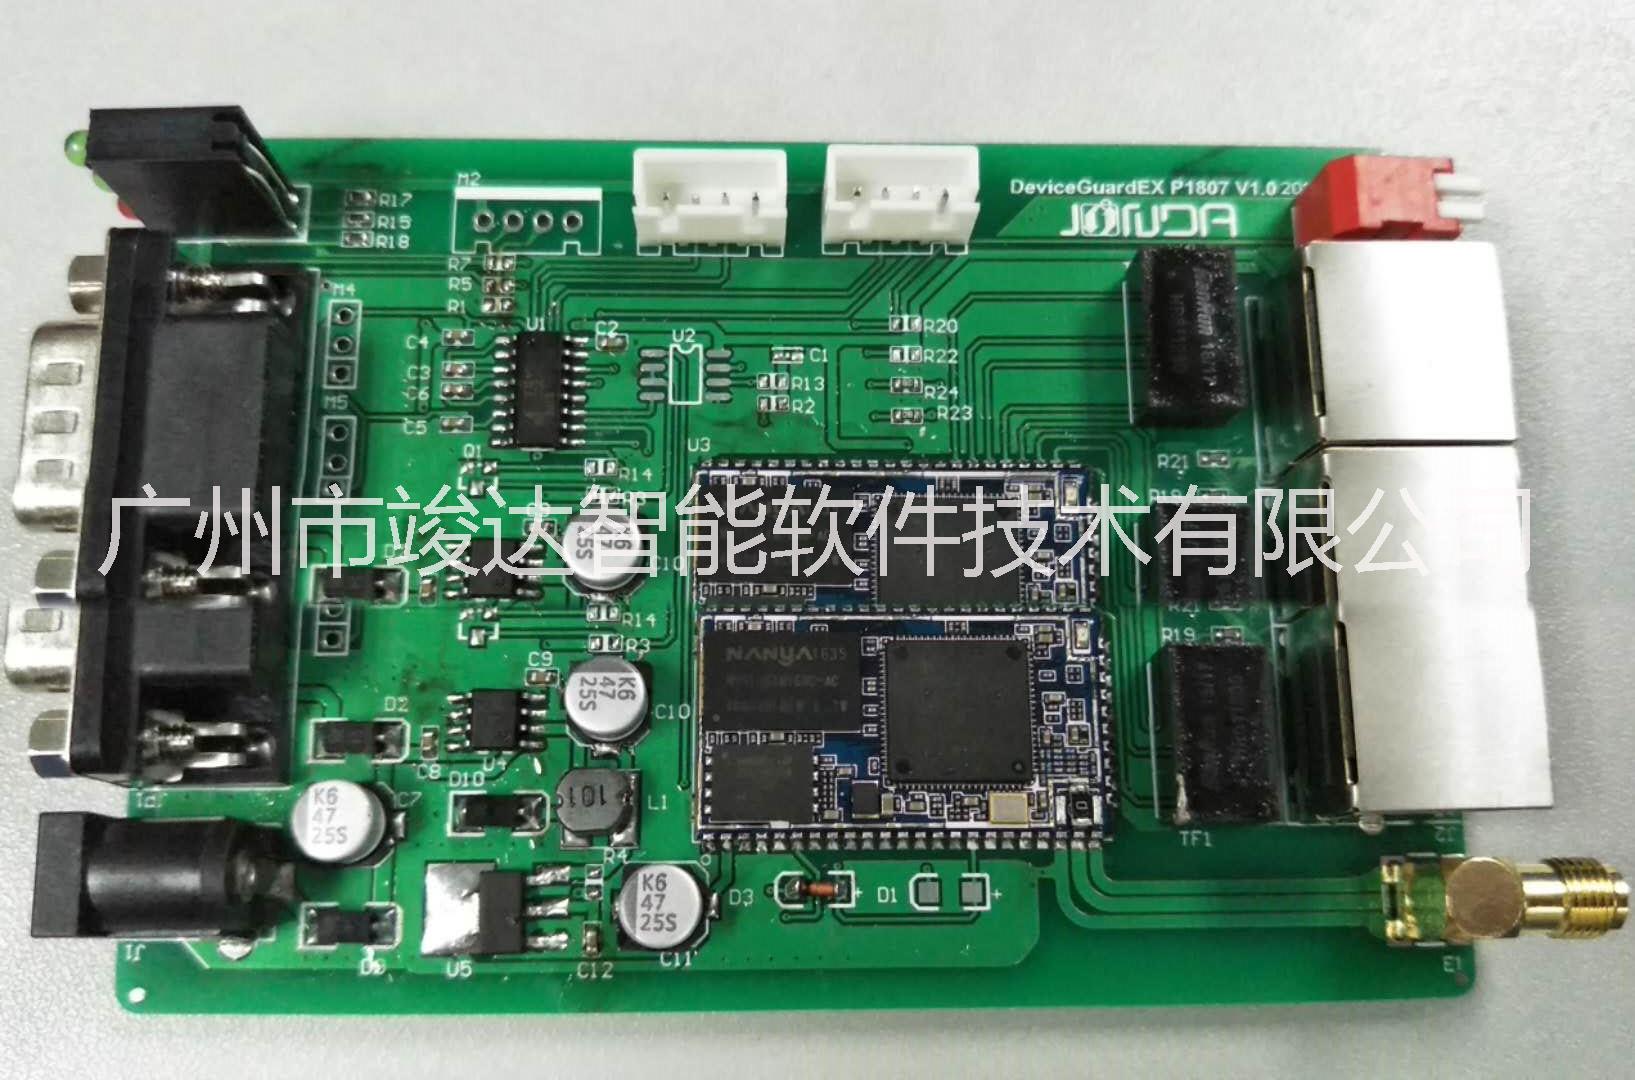 广州竣达搭建云平台智能监控卡为机器设备布控云端网络监控数据